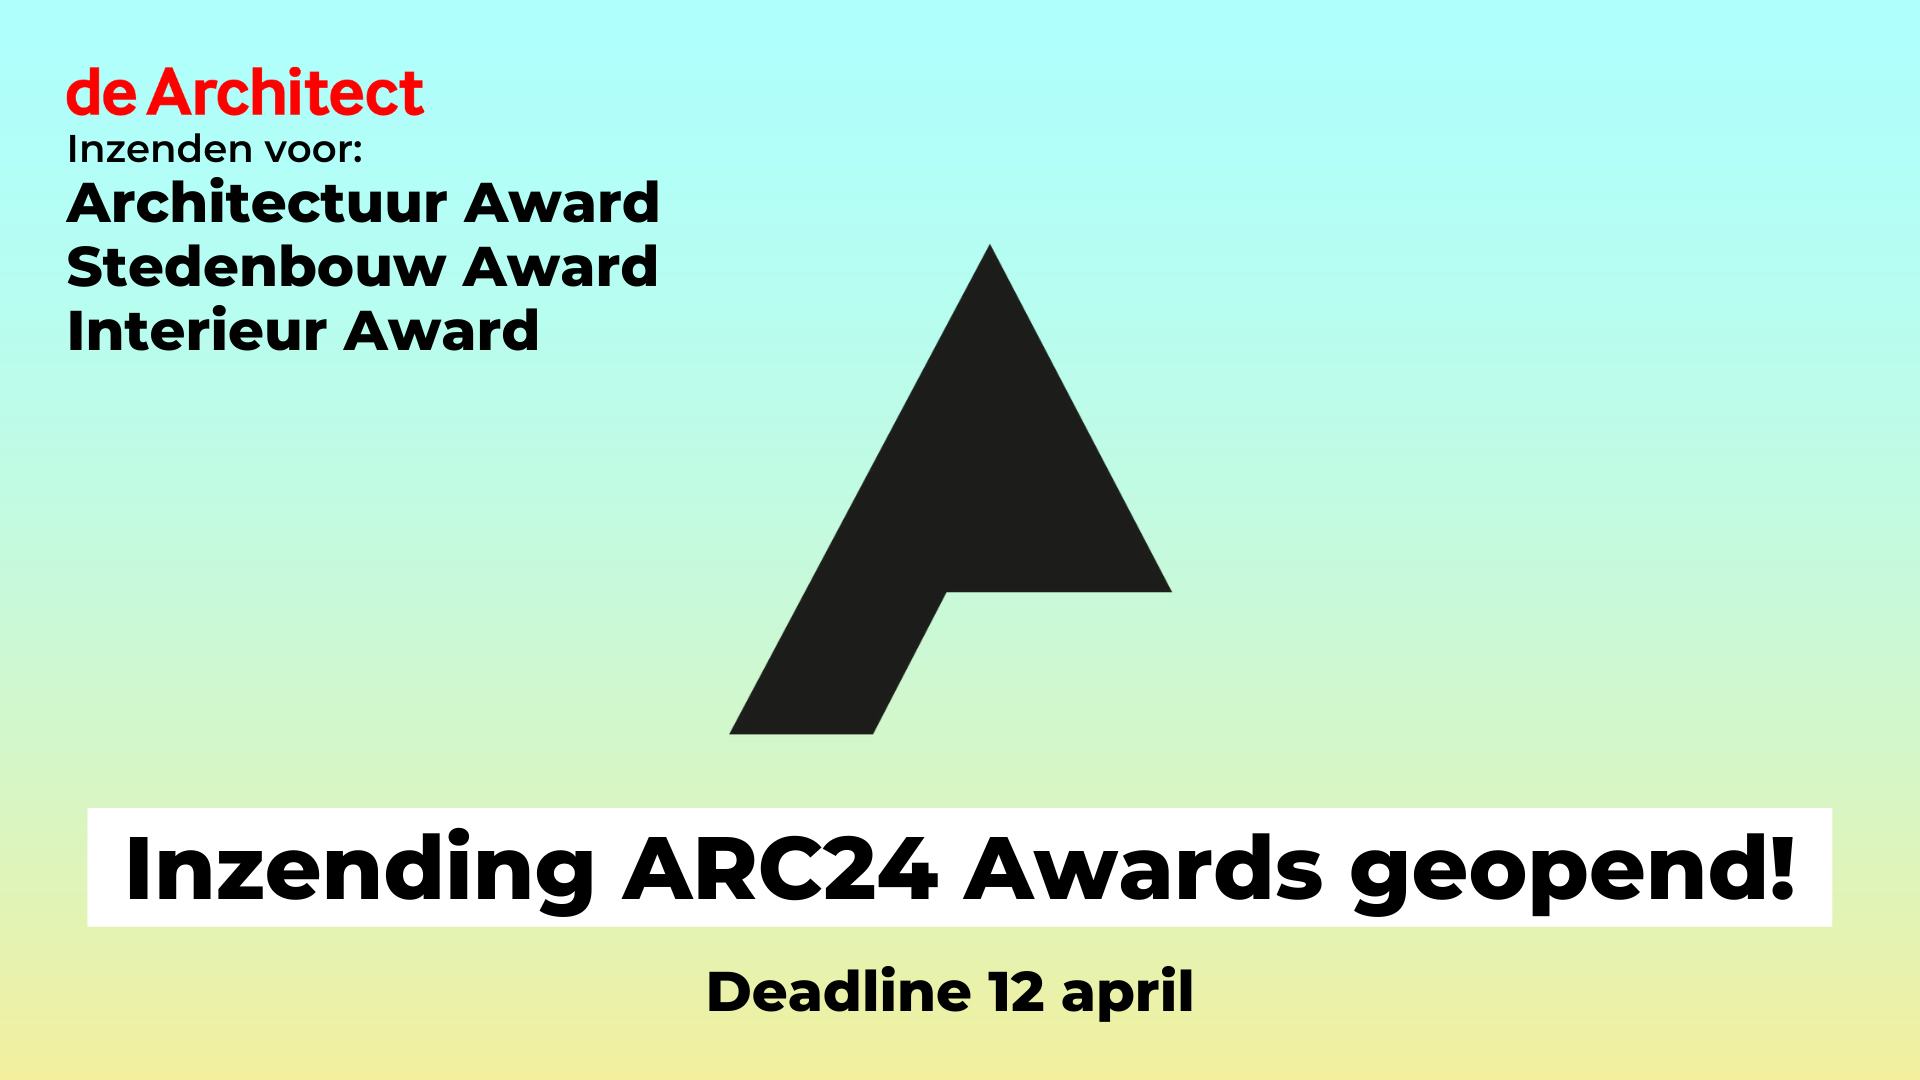 Zend in voor de ARC Awards! Deadline: 12 april